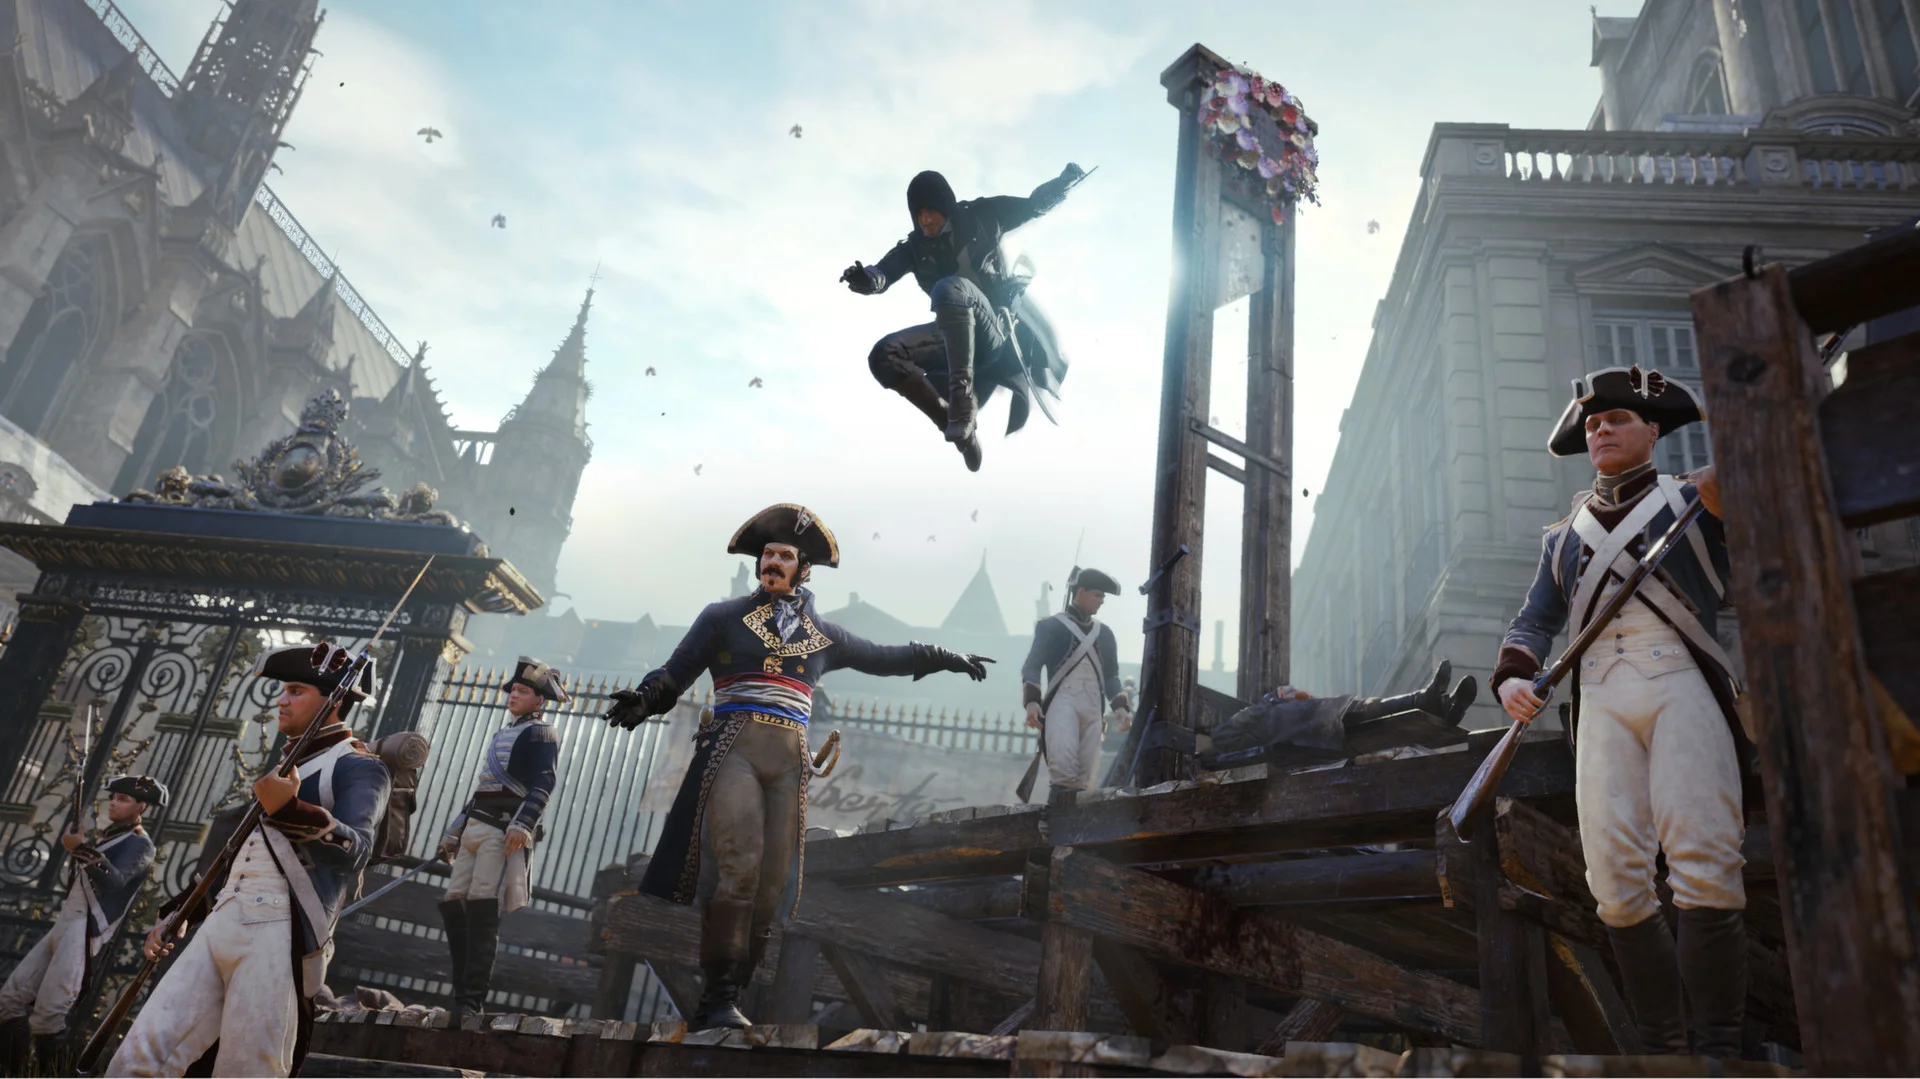 Пользователи Steam завалили Assassinʼs Creed Unity положительными рецензиями. За Нотр-Дам! - фото 1